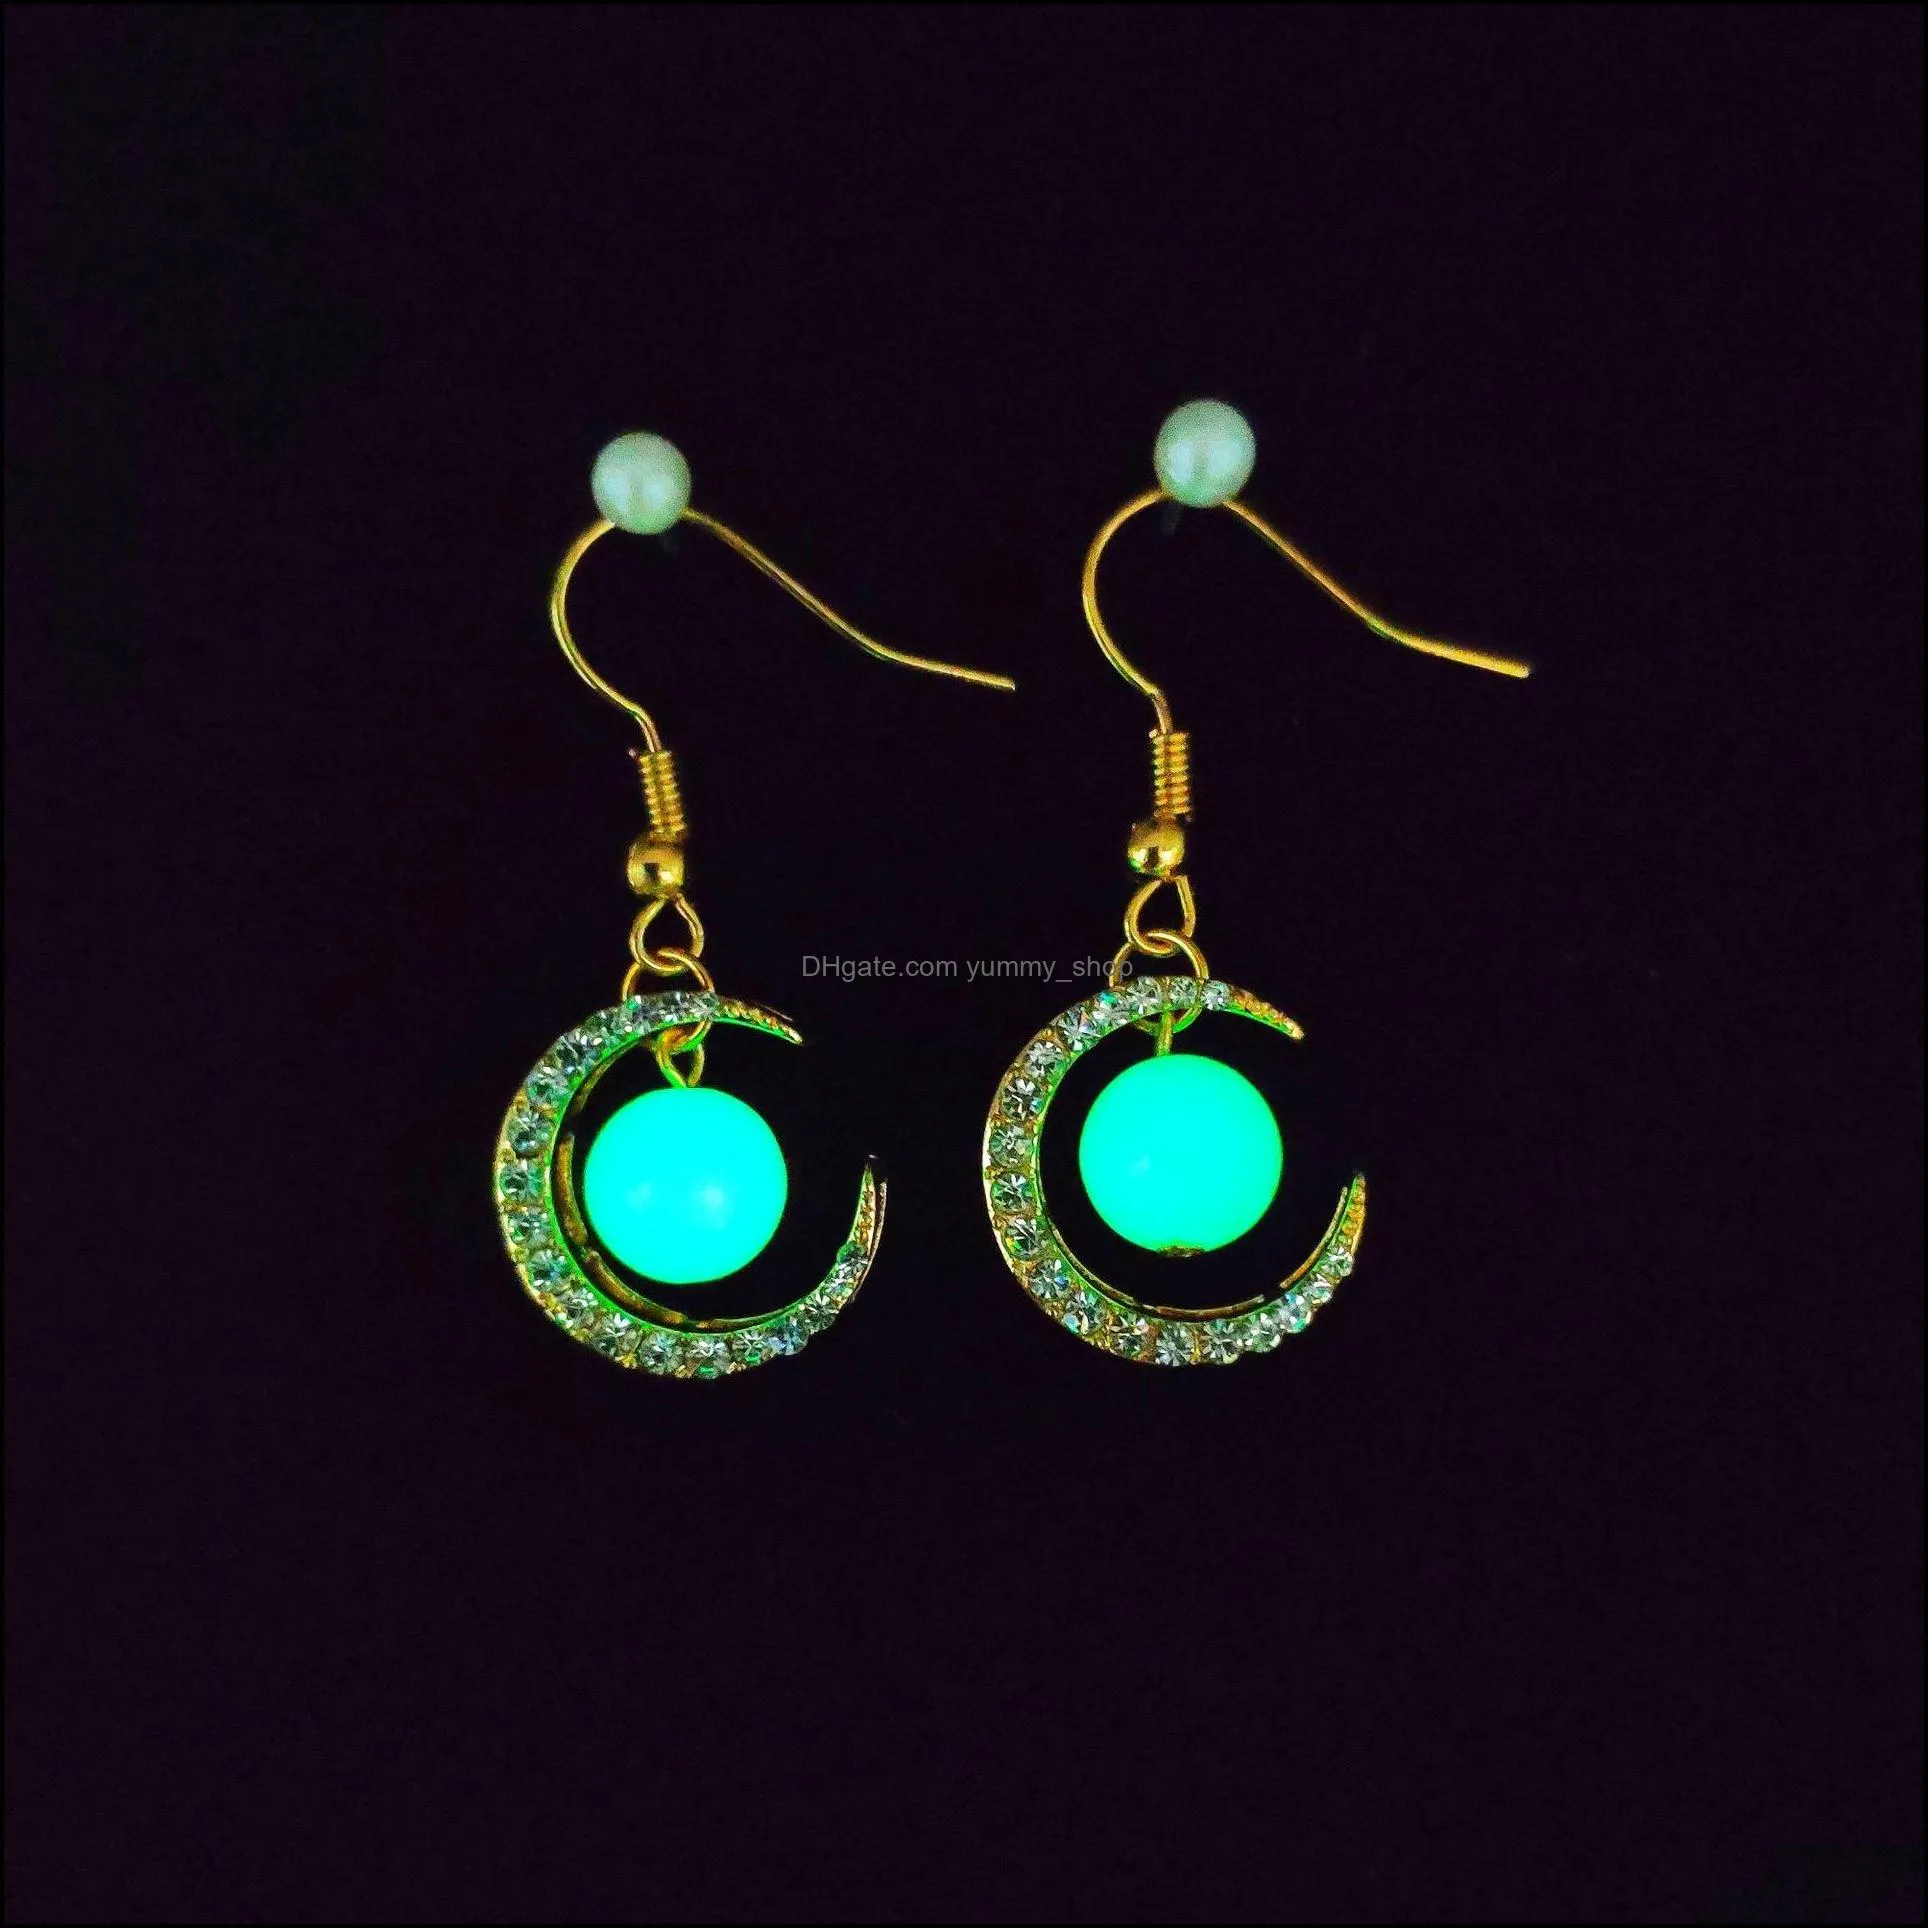 luminous pendant dangle earring classic stars moon key shape glow in the dark earrings women fluorescence jewelry